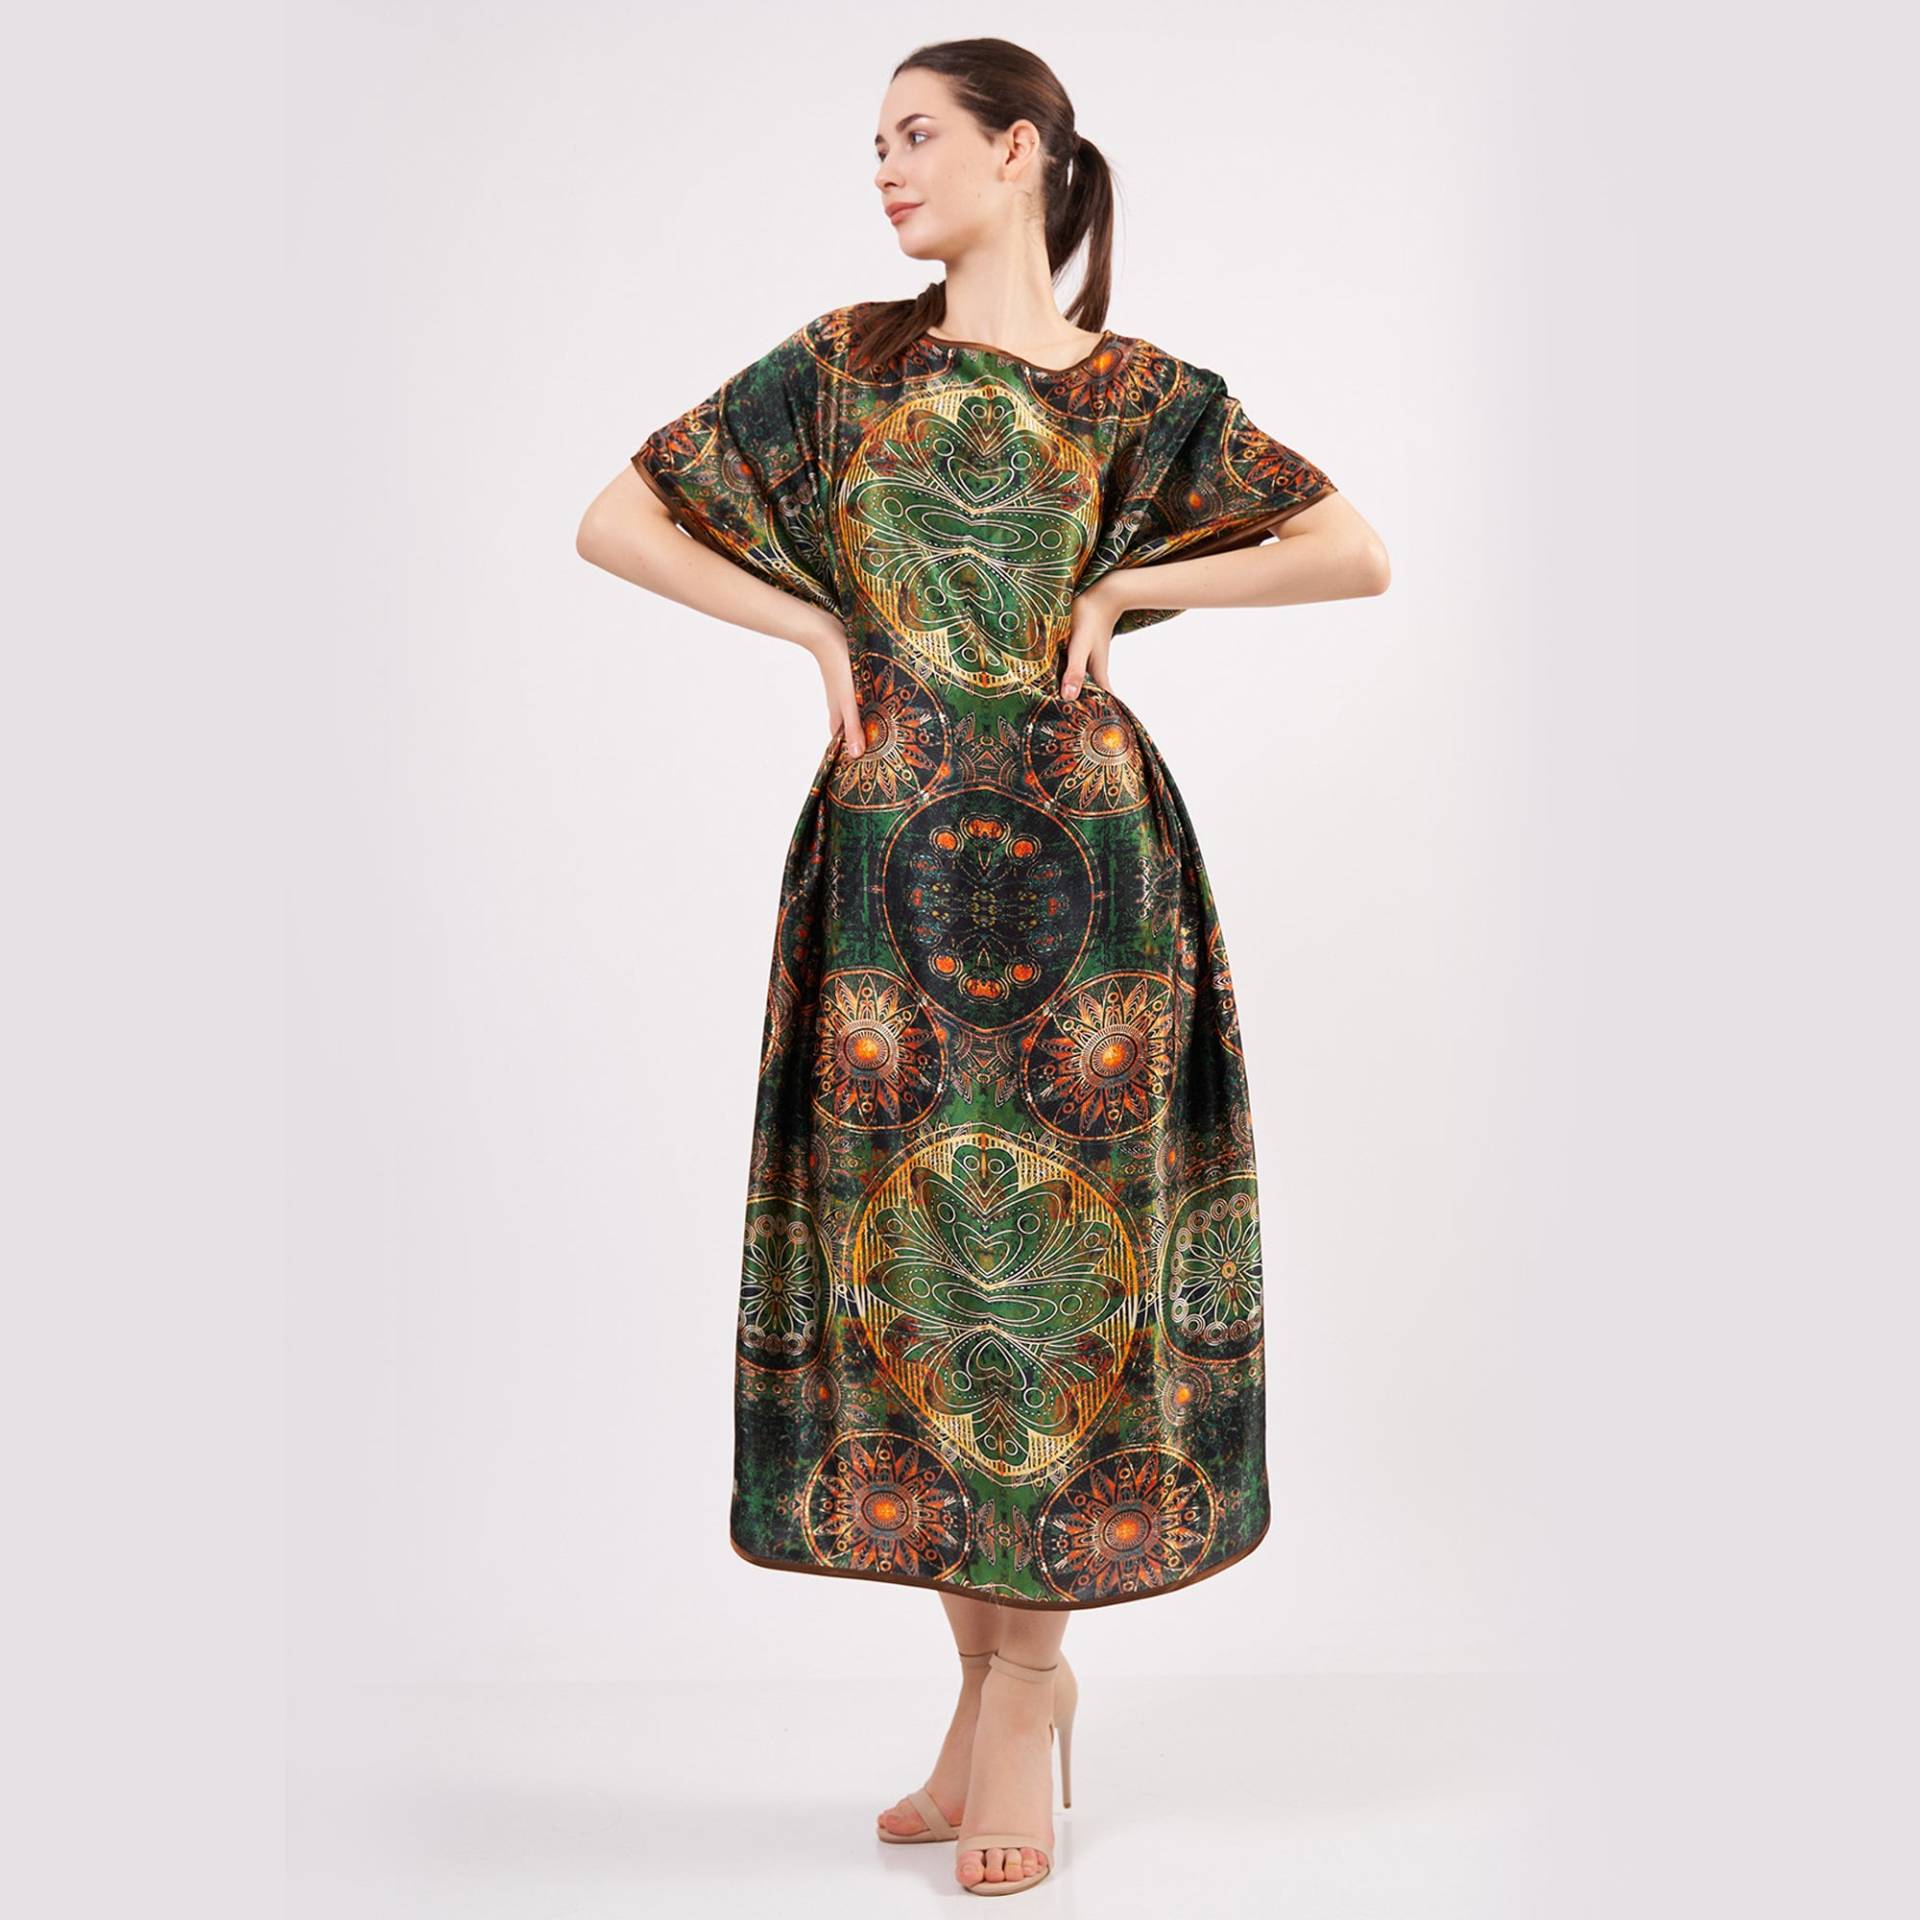 Reine Seide Plus Size Langes Kleid Für Frauen | Übergroßes Khaki Grünes Kaftan Mandala Muster Locker Sitzendes Weihnachtsgeschenk Sie von NomadsFeltSilk